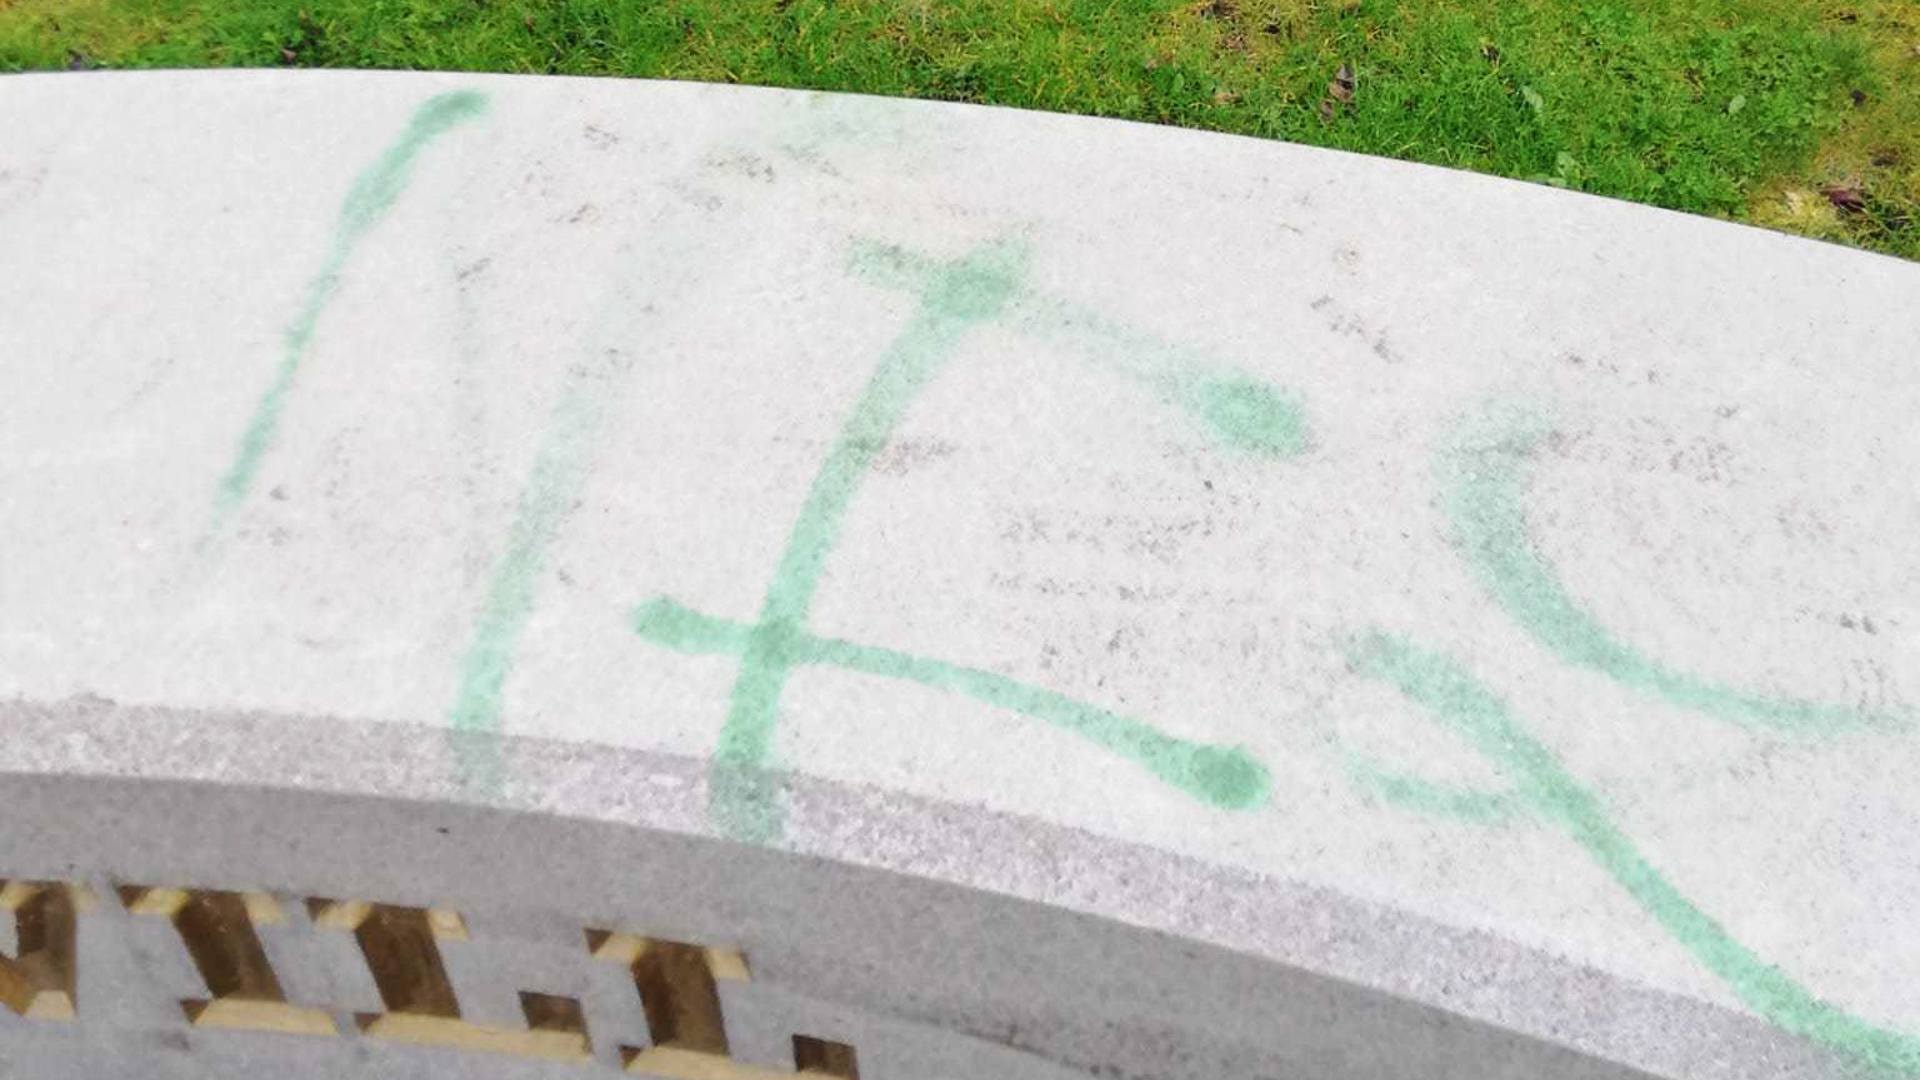 The vandalism at the war memorial.